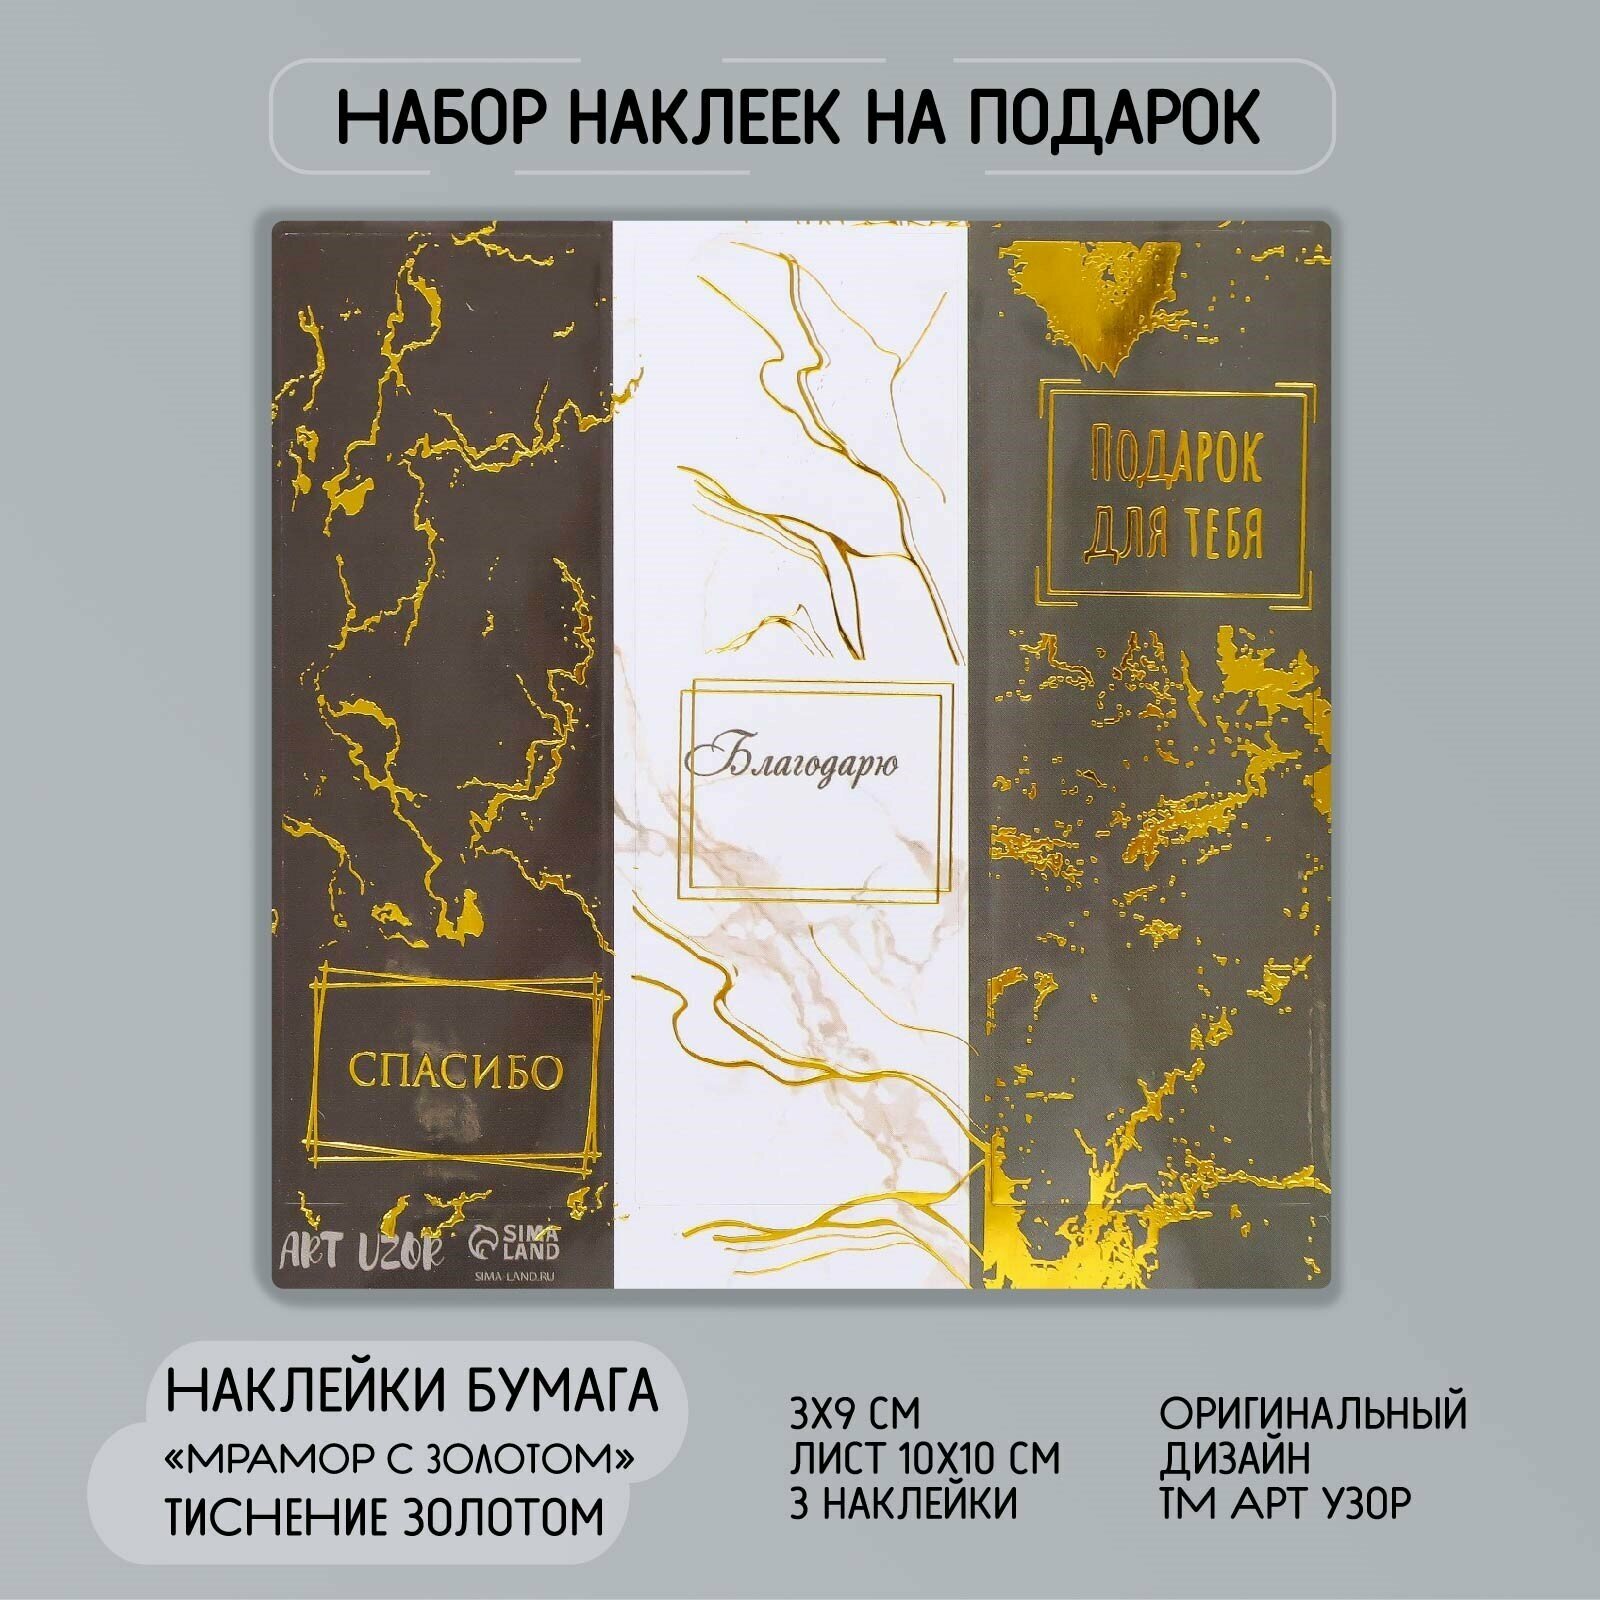 Наклейка бумага "Мрамор с золотом" тиснение 3х9 см лист 10х10 см (10шт.)